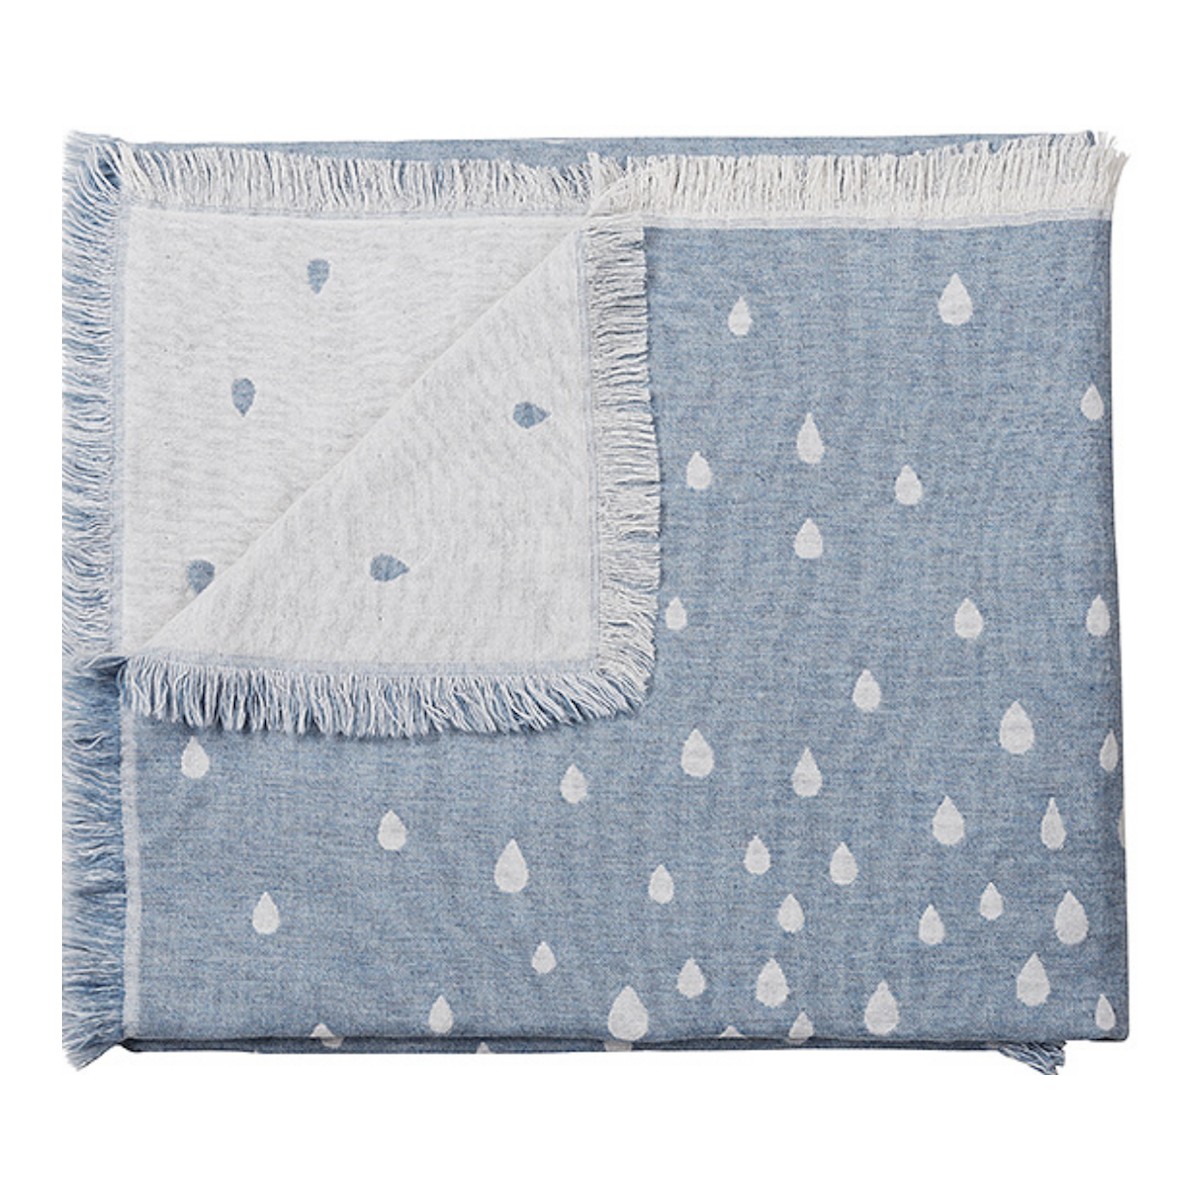 sky - Raining wool blanket